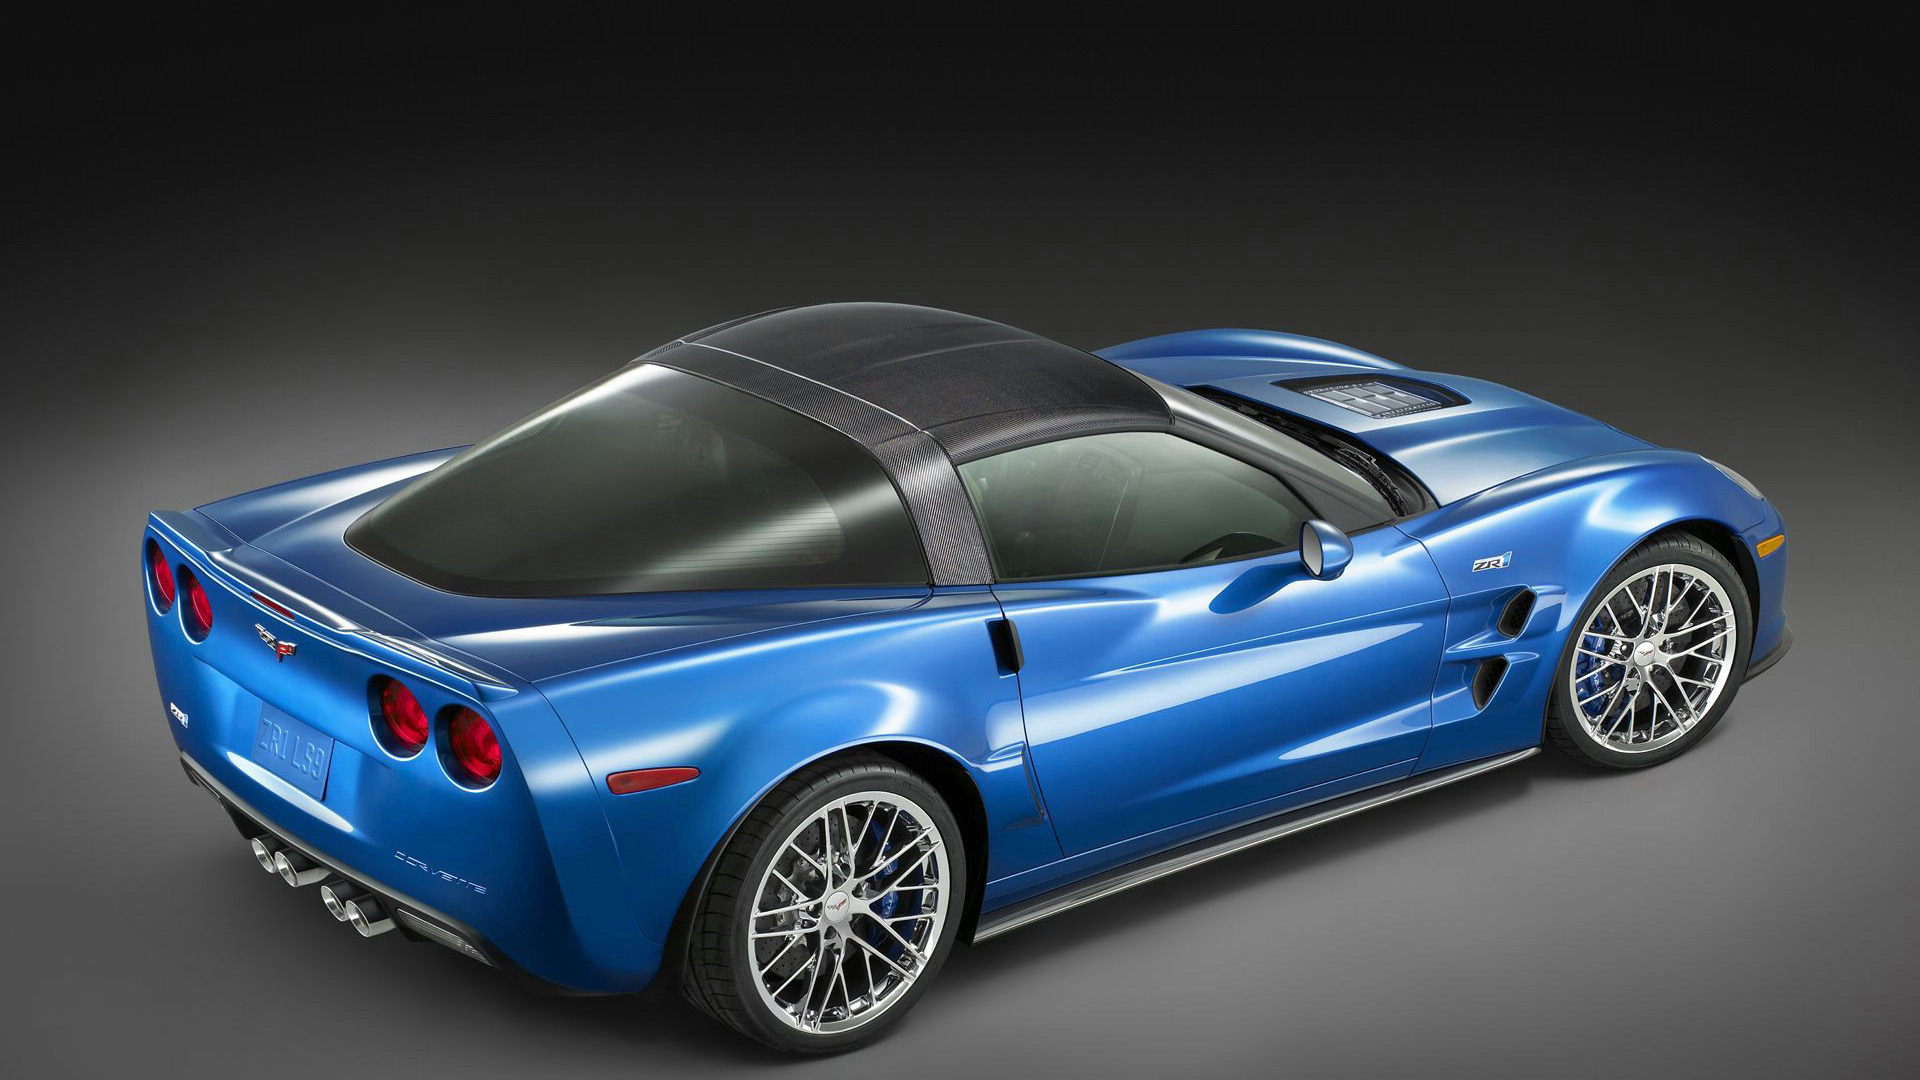 Corvette HD Wallpaper 1080p Resolutions Car